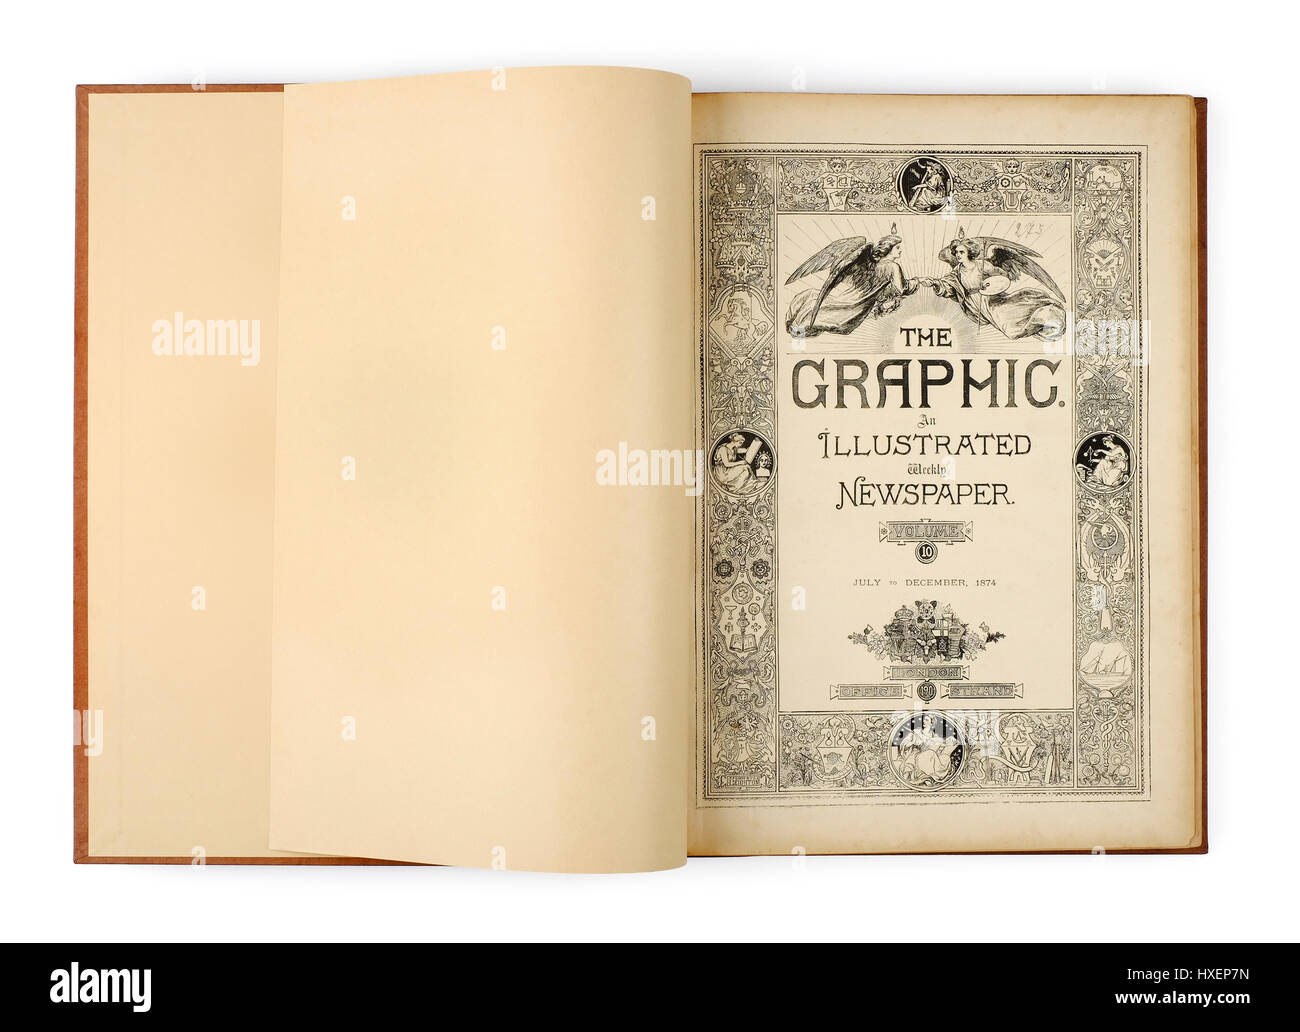 Band 10 (Juli bis Dezember 1874) von "The Graphic", die britische Wochenzeitschrift Illustrierte Zeitung. Die Grafik wurde von William Luson Thomas im Jahre 1869 gegründet. Stockfoto